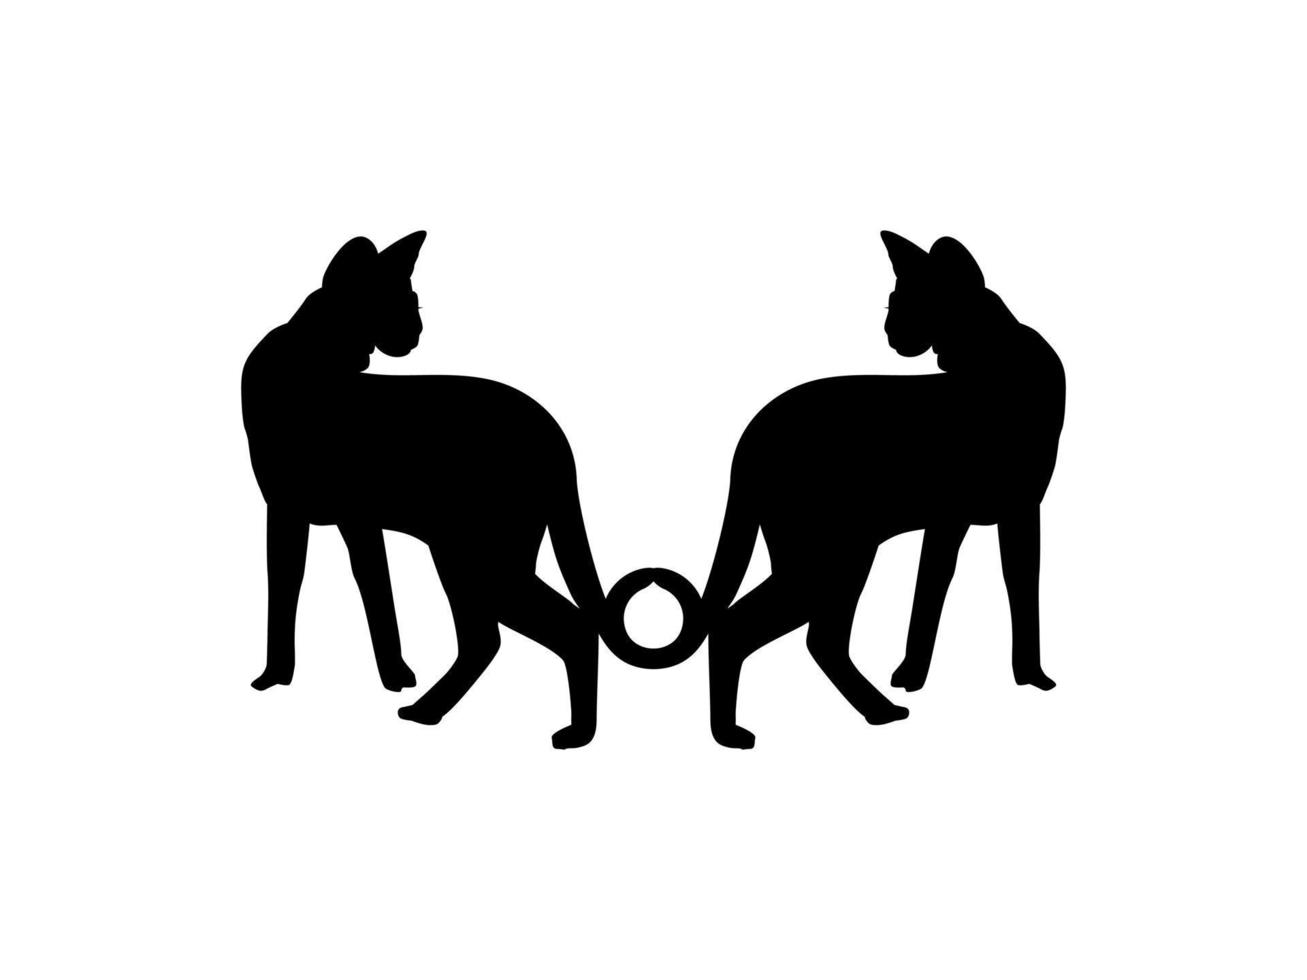 paire de la silhouette de chat savanah pour l'illustration d'art, le logo, le pictogramme, le site Web ou l'élément de conception graphique. illustration vectorielle vecteur